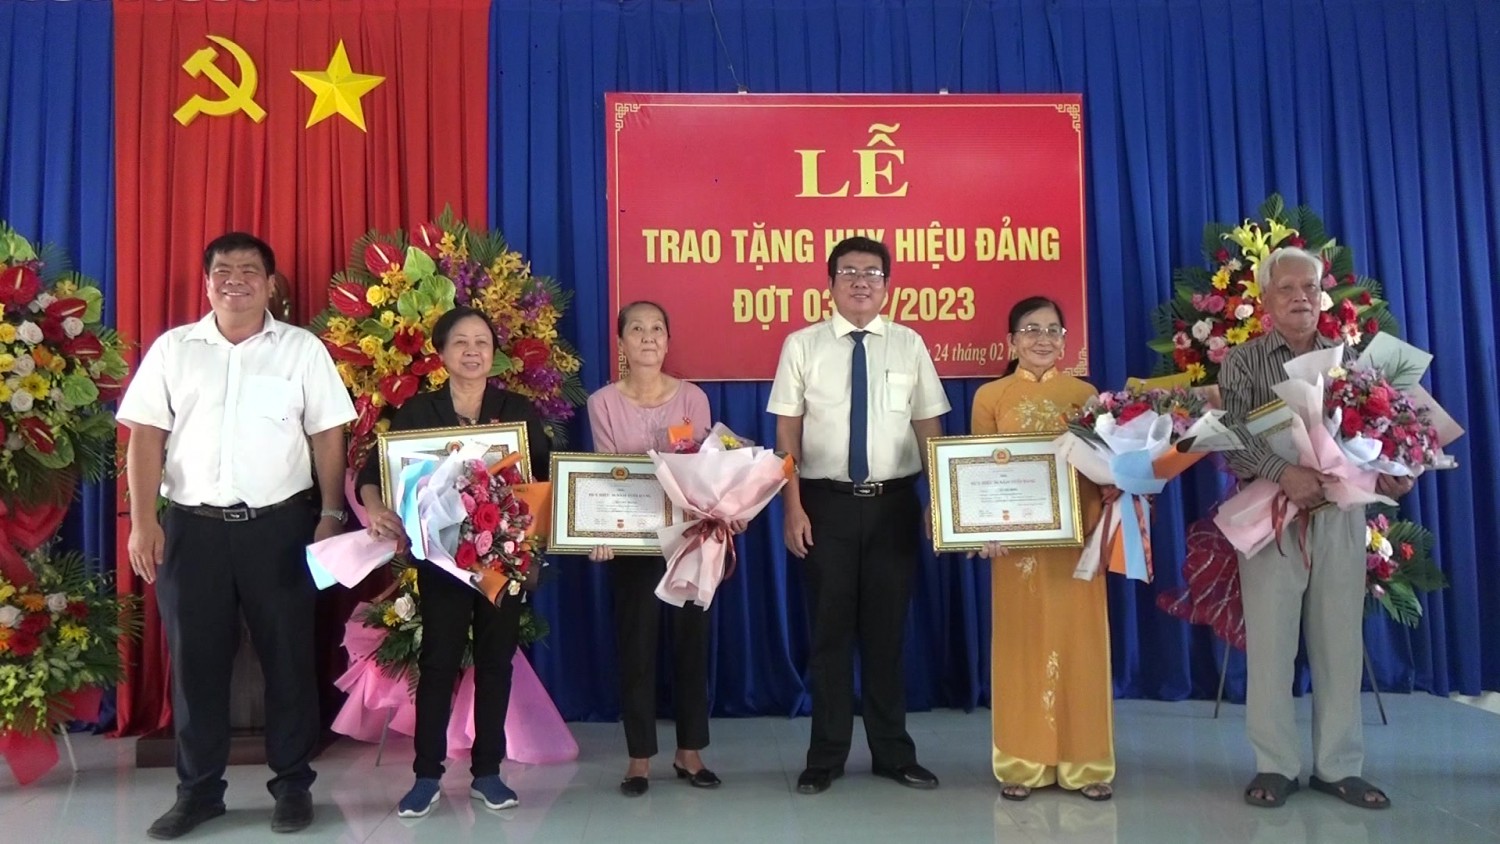 Ông Hồ Văn Hồng- Phó Bí thư Thường trực Thị ủy, Chủ tịch HĐND thị xã Trảng Bàng (thứ ba, từ phải qua) tặng hoa, trao Huy hiệu Đảng cho các đảng viên tại phường Trảng Bàng.